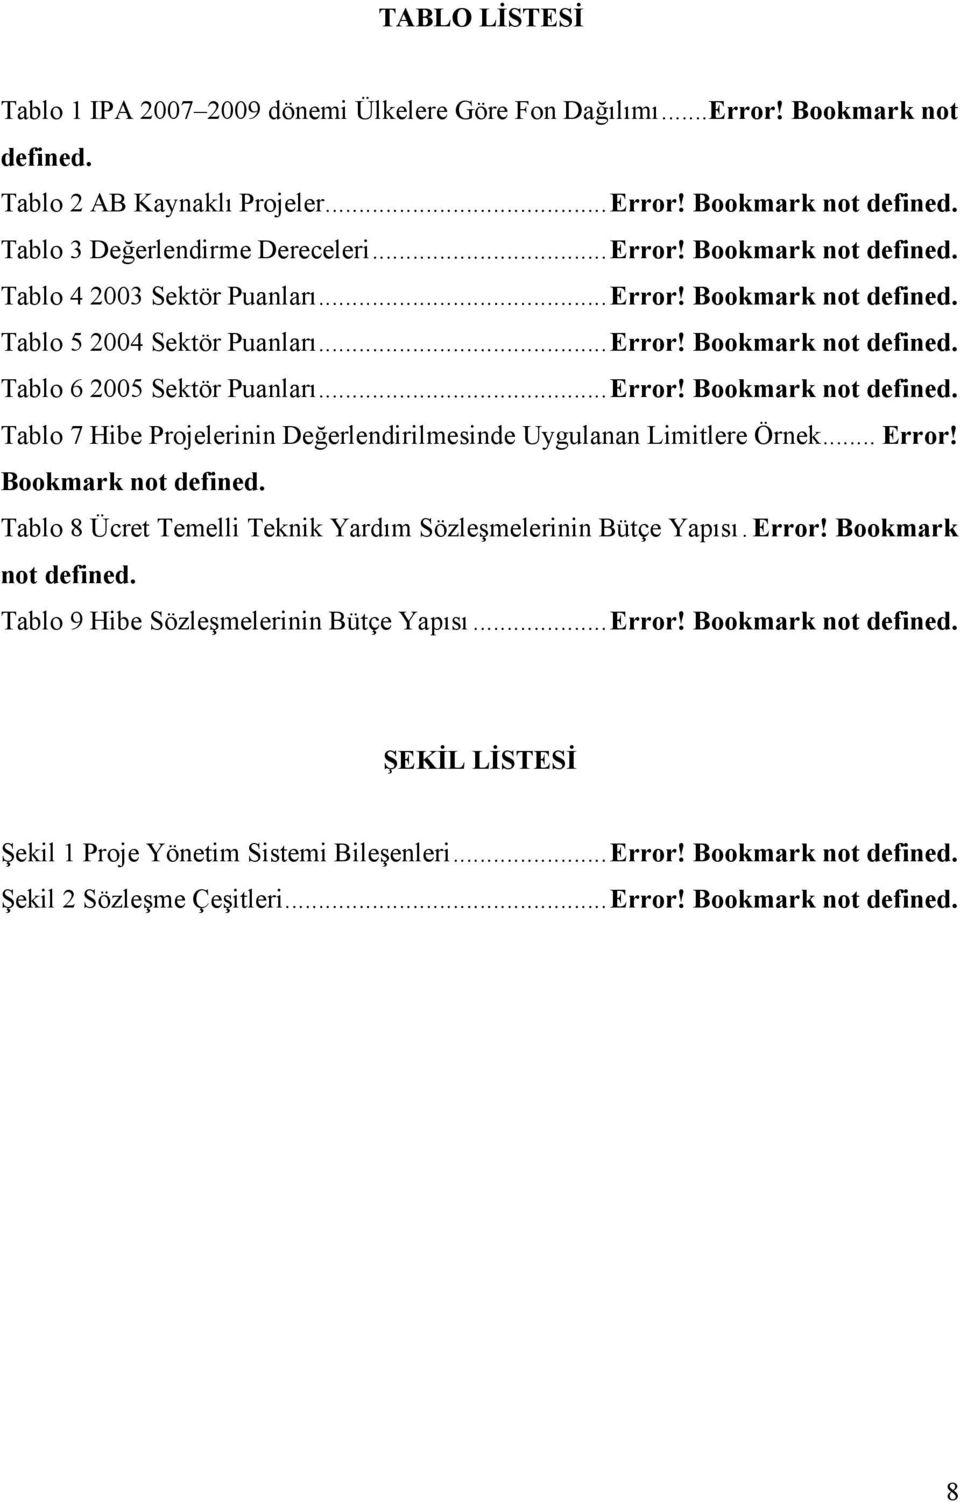 .. Error! Bookmark not Tablo 8 Ücret Temelli Teknik Yardım Sözleşmelerinin Bütçe Yapısı. Error! Bookmark not Tablo 9 Hibe Sözleşmelerinin Bütçe Yapısı... Error! Bookmark not ŞEKİL LİSTESİ Şekil 1 Proje Yönetim Sistemi Bileşenleri.